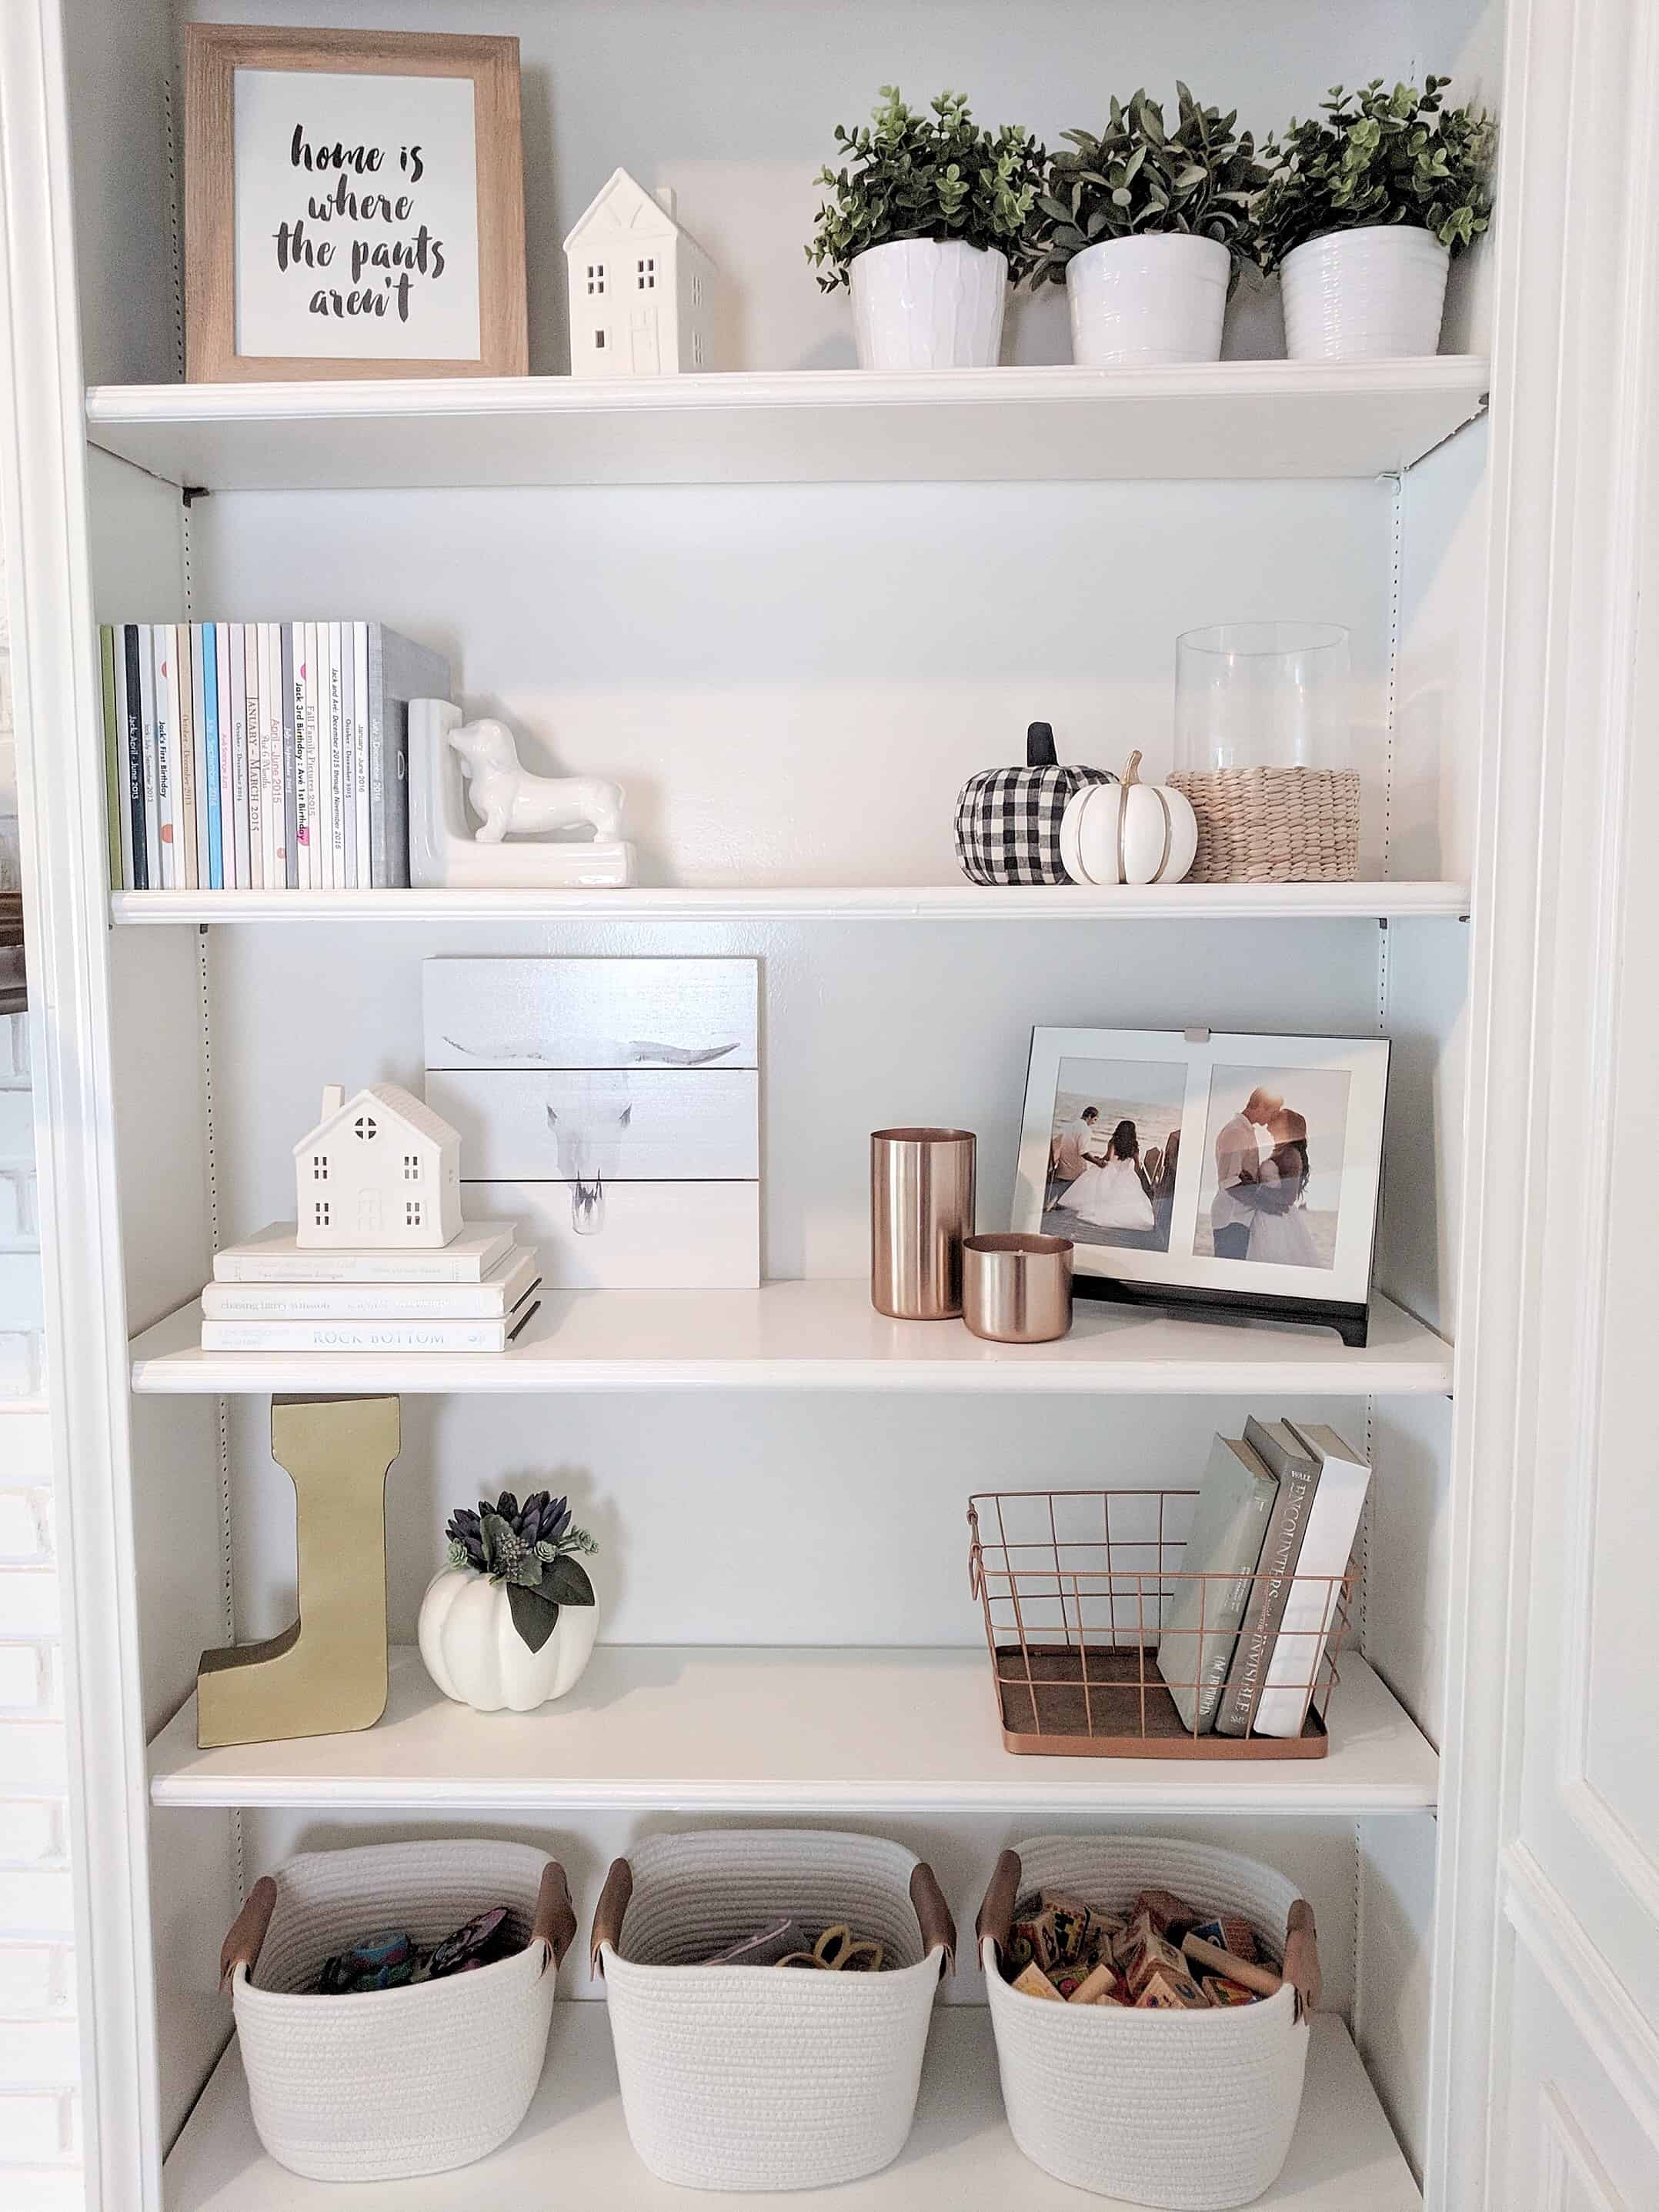 Contemporary Shelves